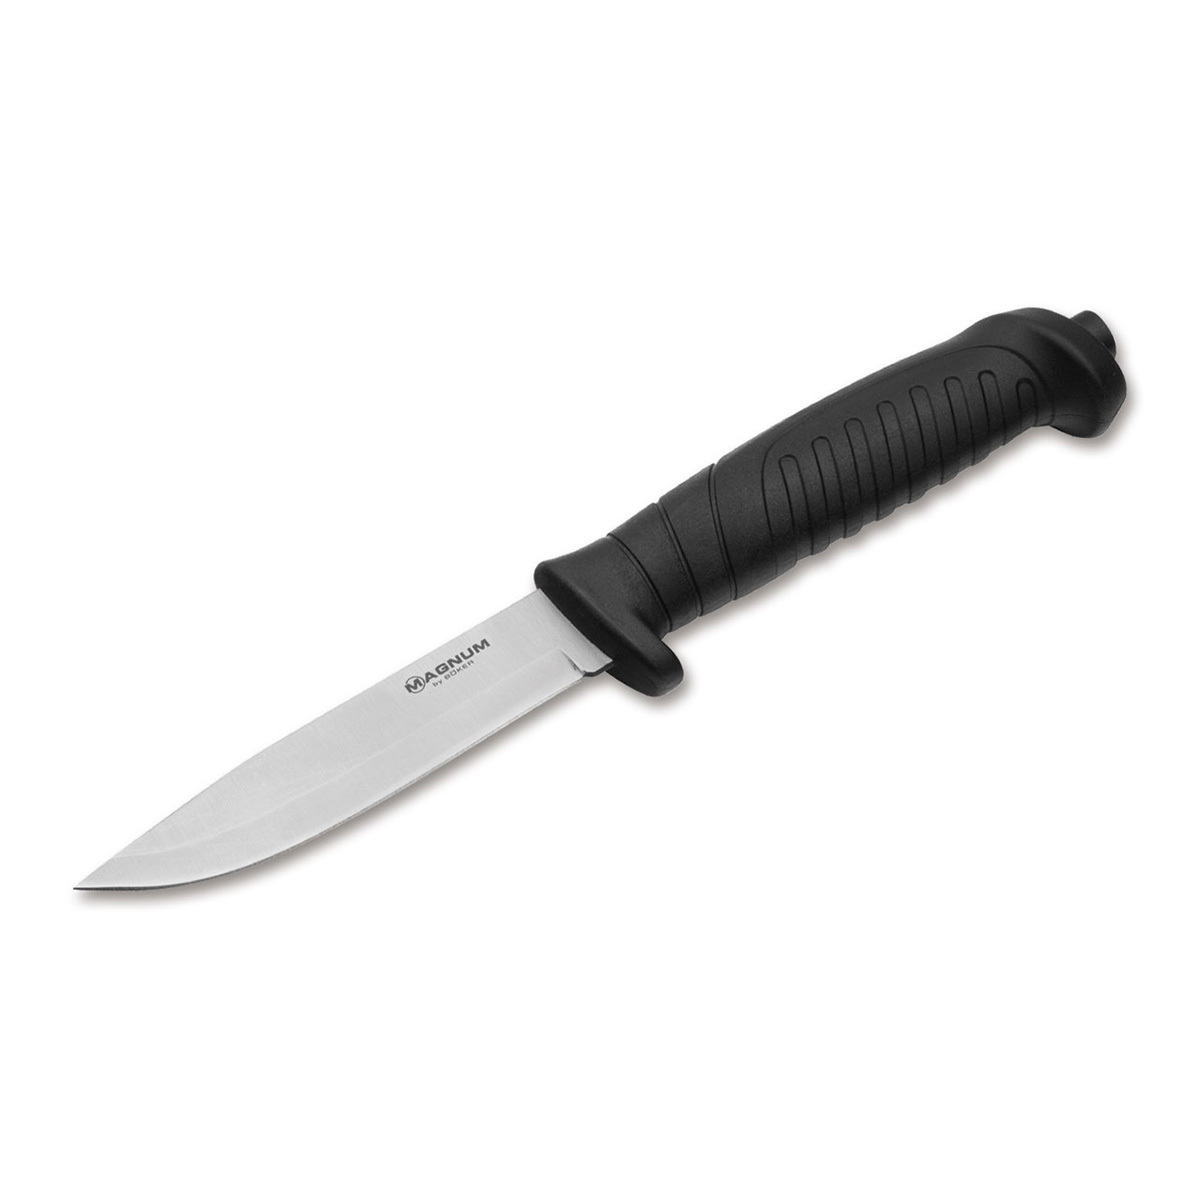 Нож с фиксированным клинком Boker Knivgar Black, сталь 420A, рукоять пластик нож с фиксированным клинком gerber river shorty